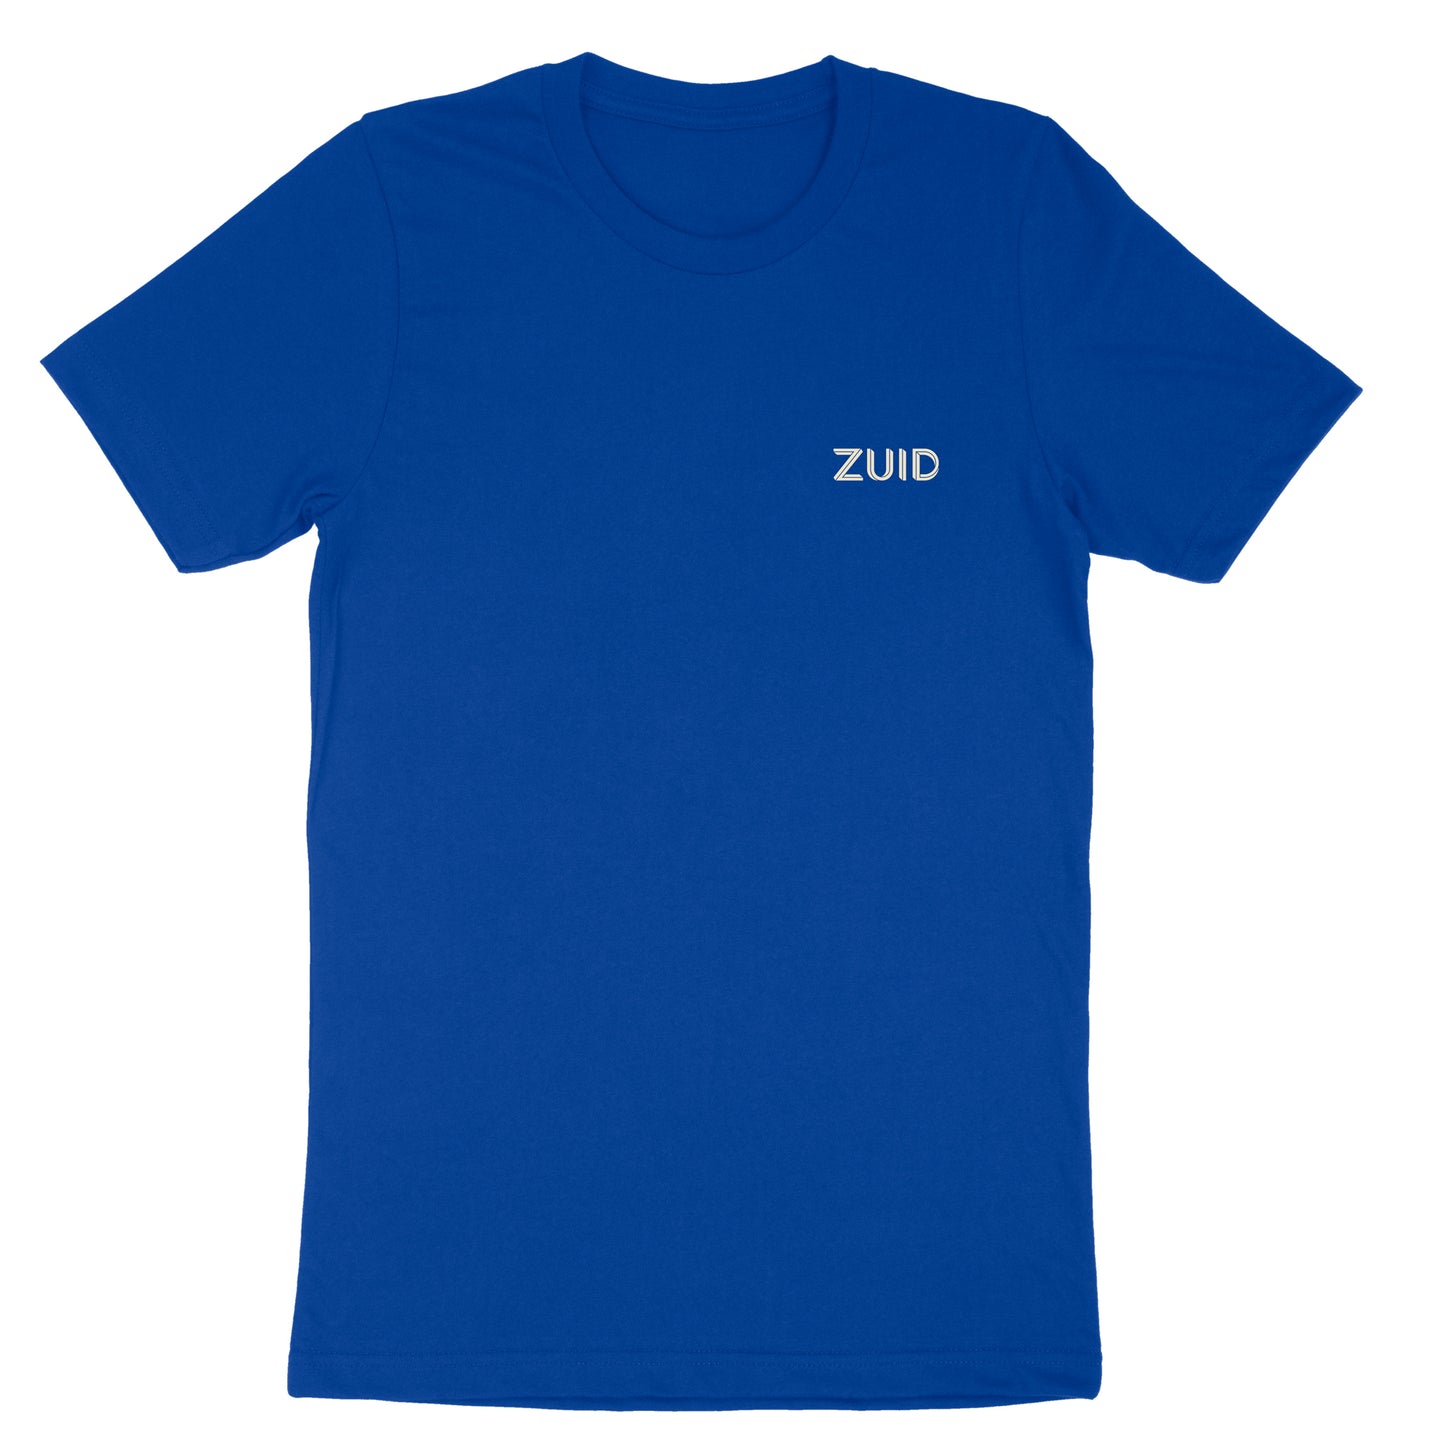 Zuid Limited edition Cobalt Blue T-shirt